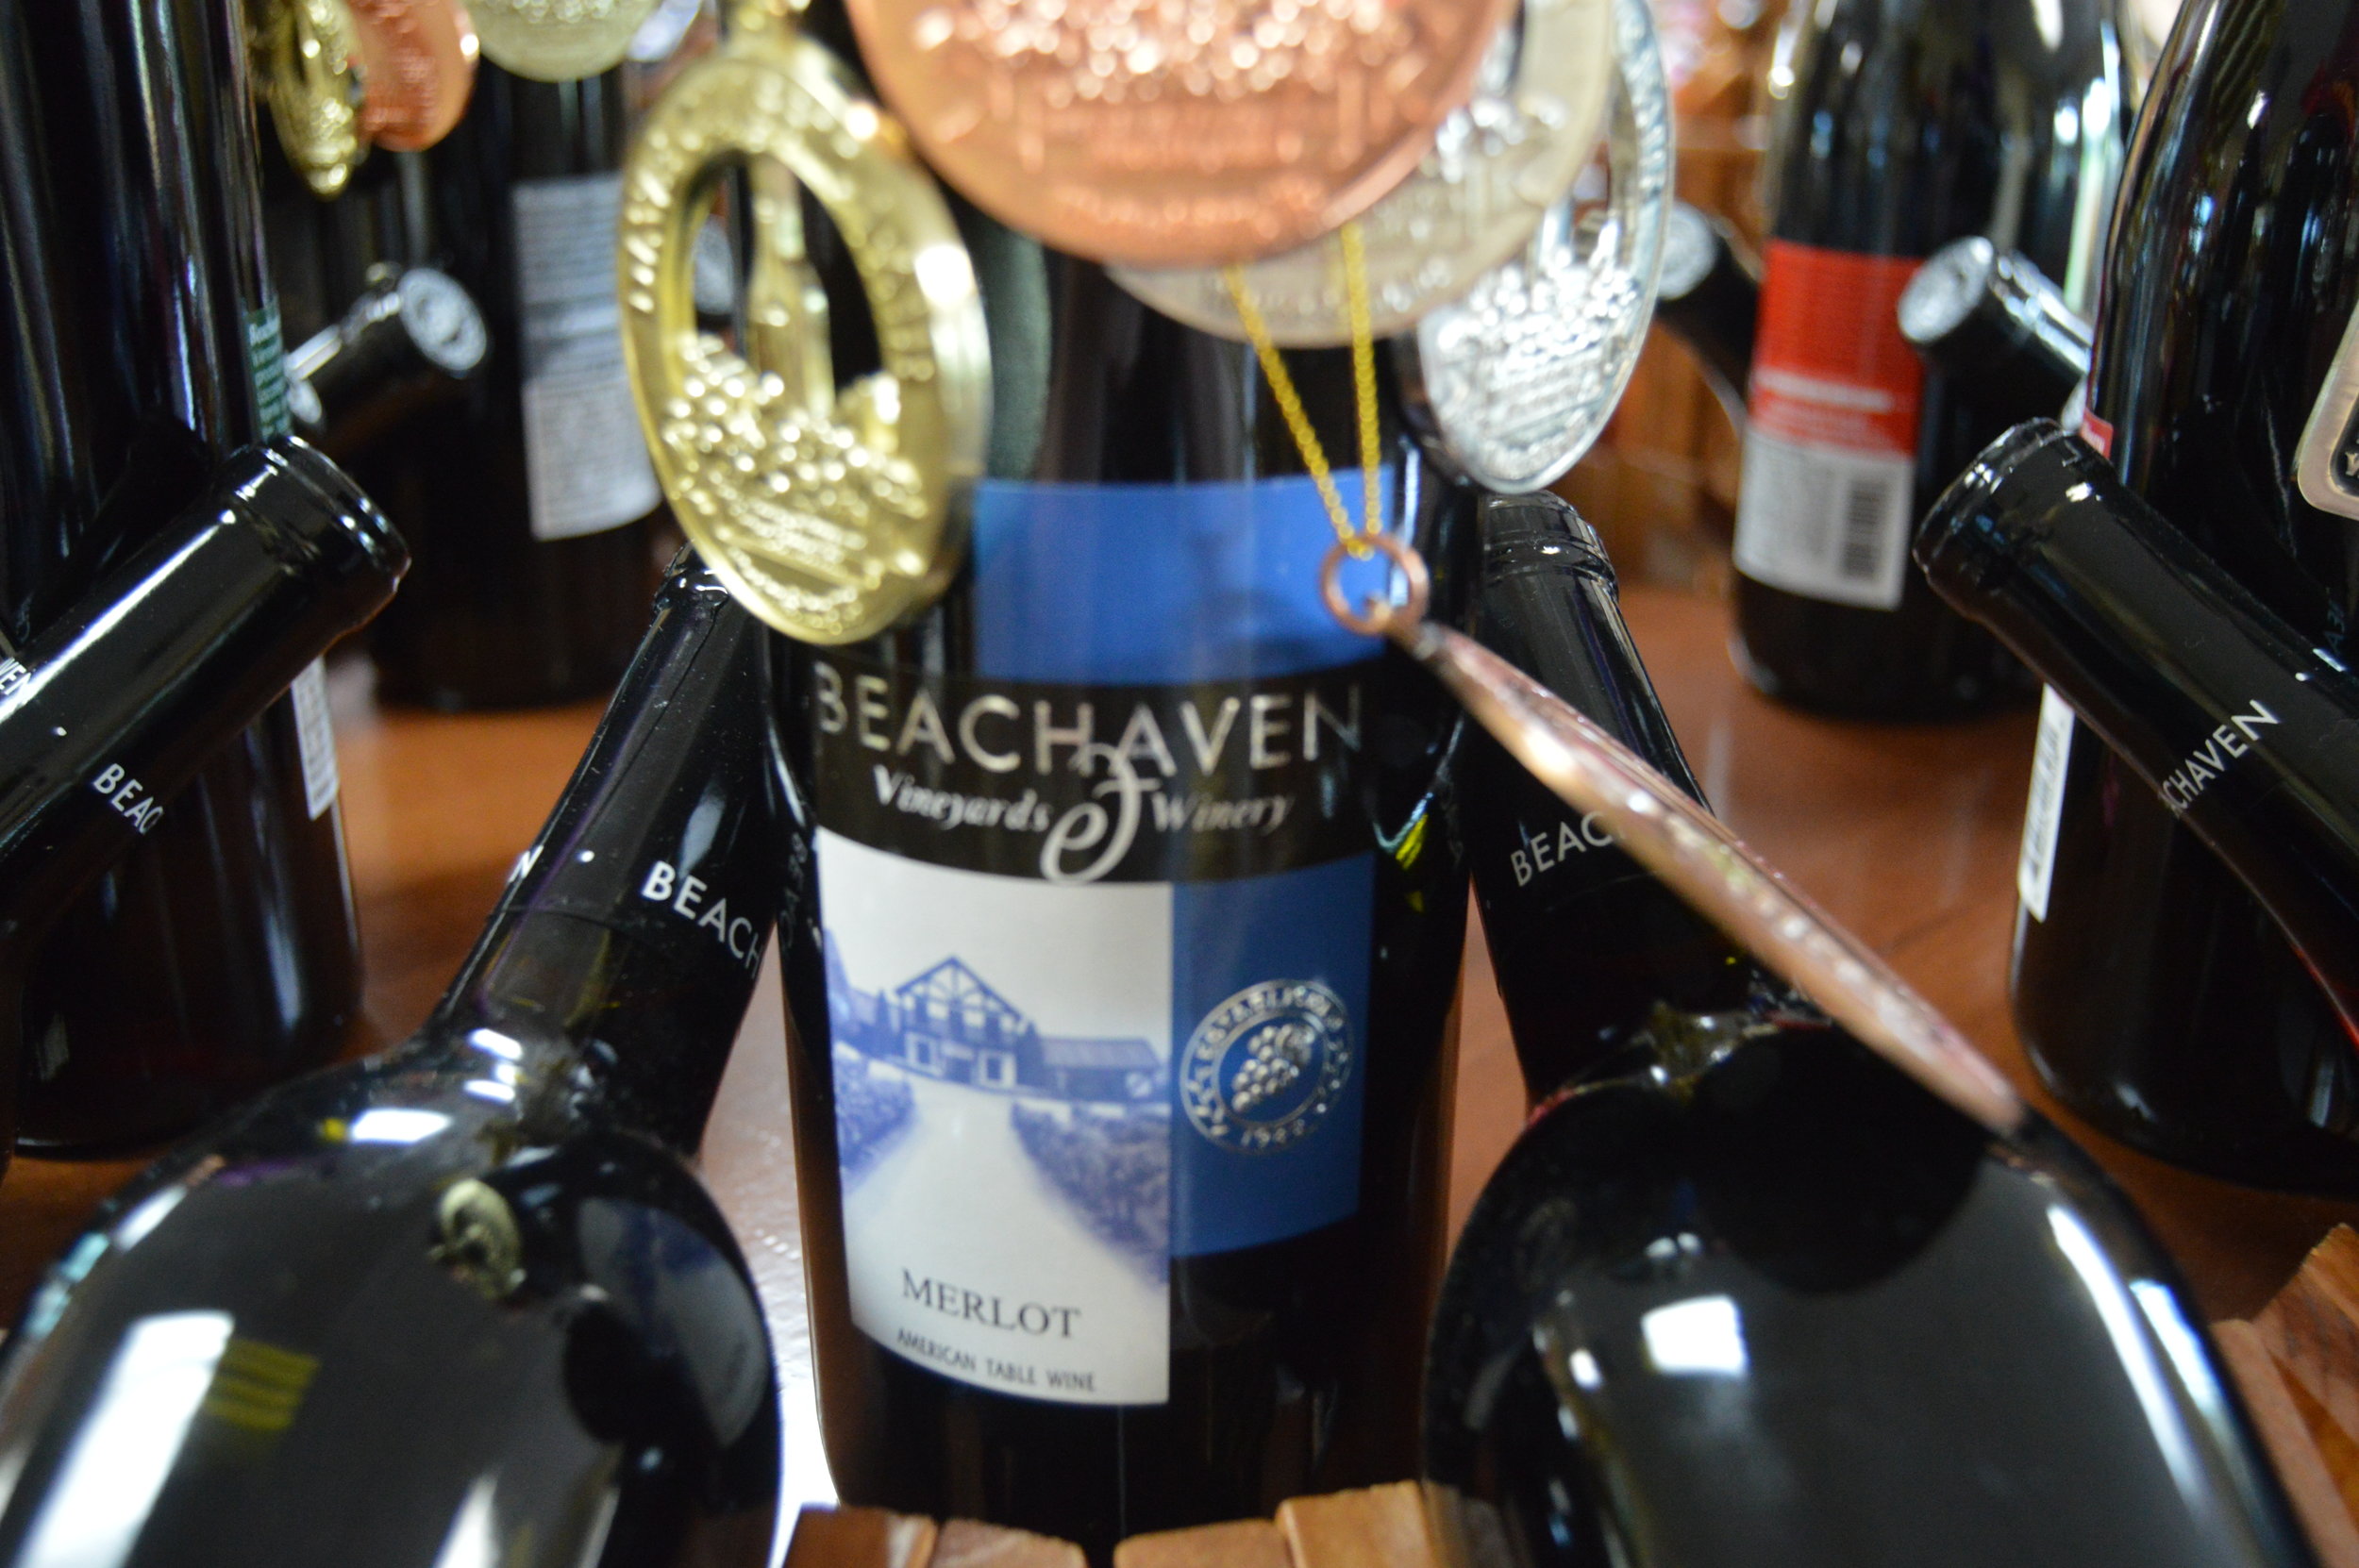 Beachaven Wine Awards